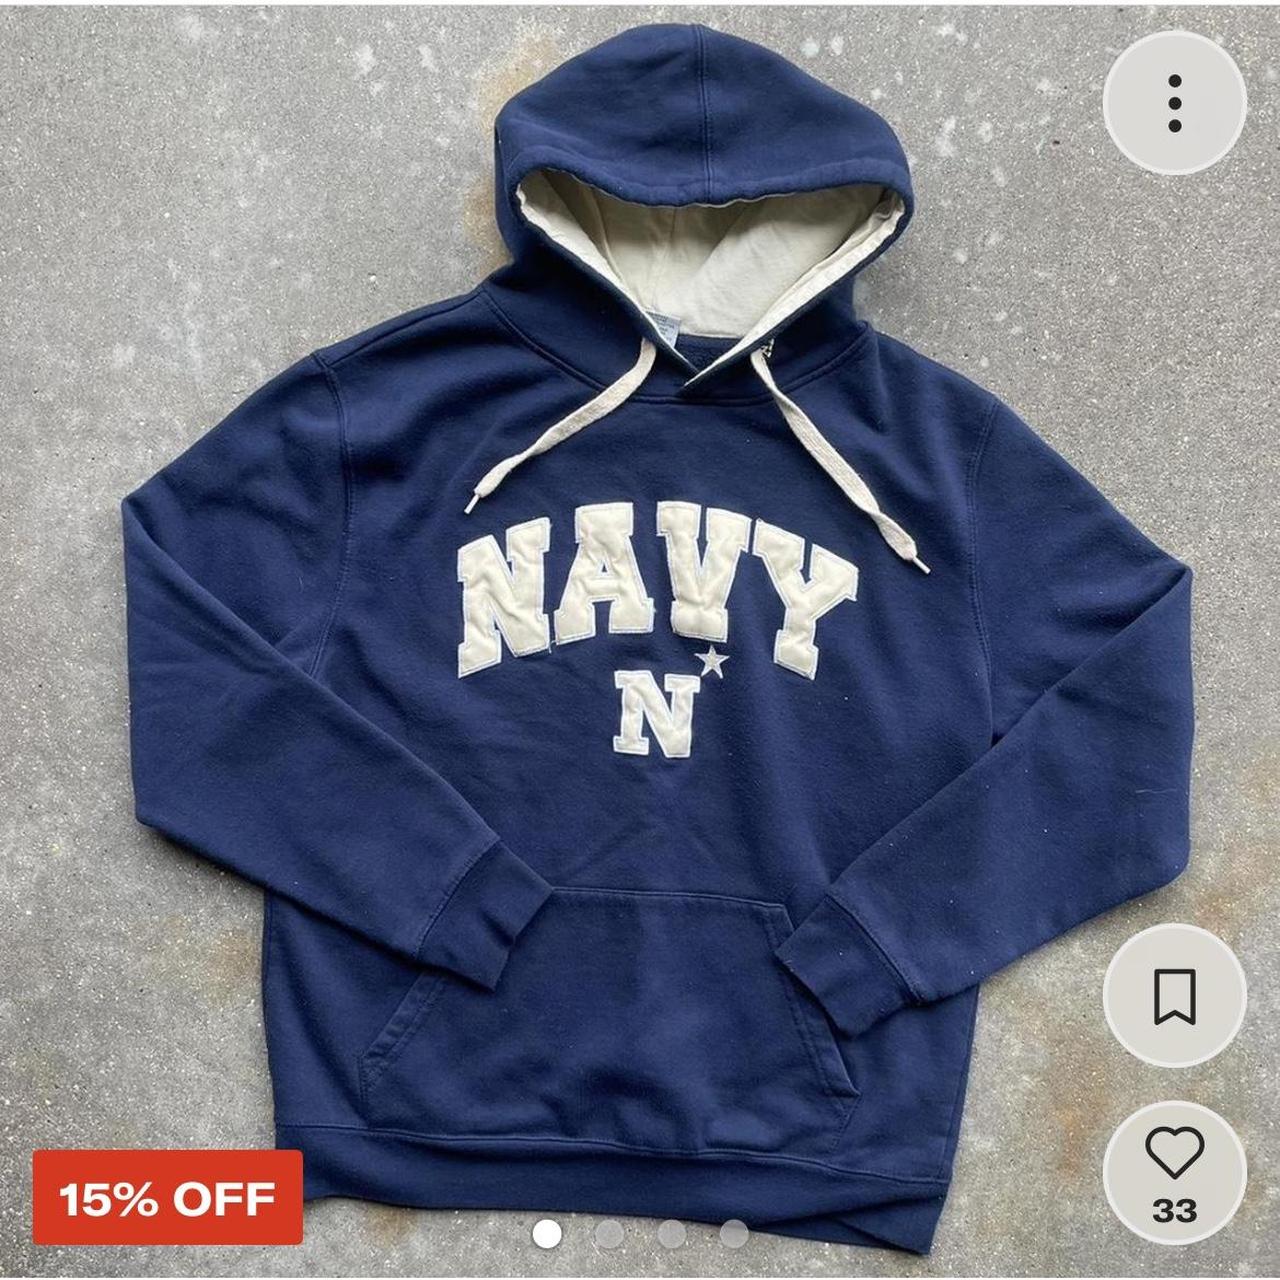 00s vintage navy naval academy hoodie. size large... - Depop